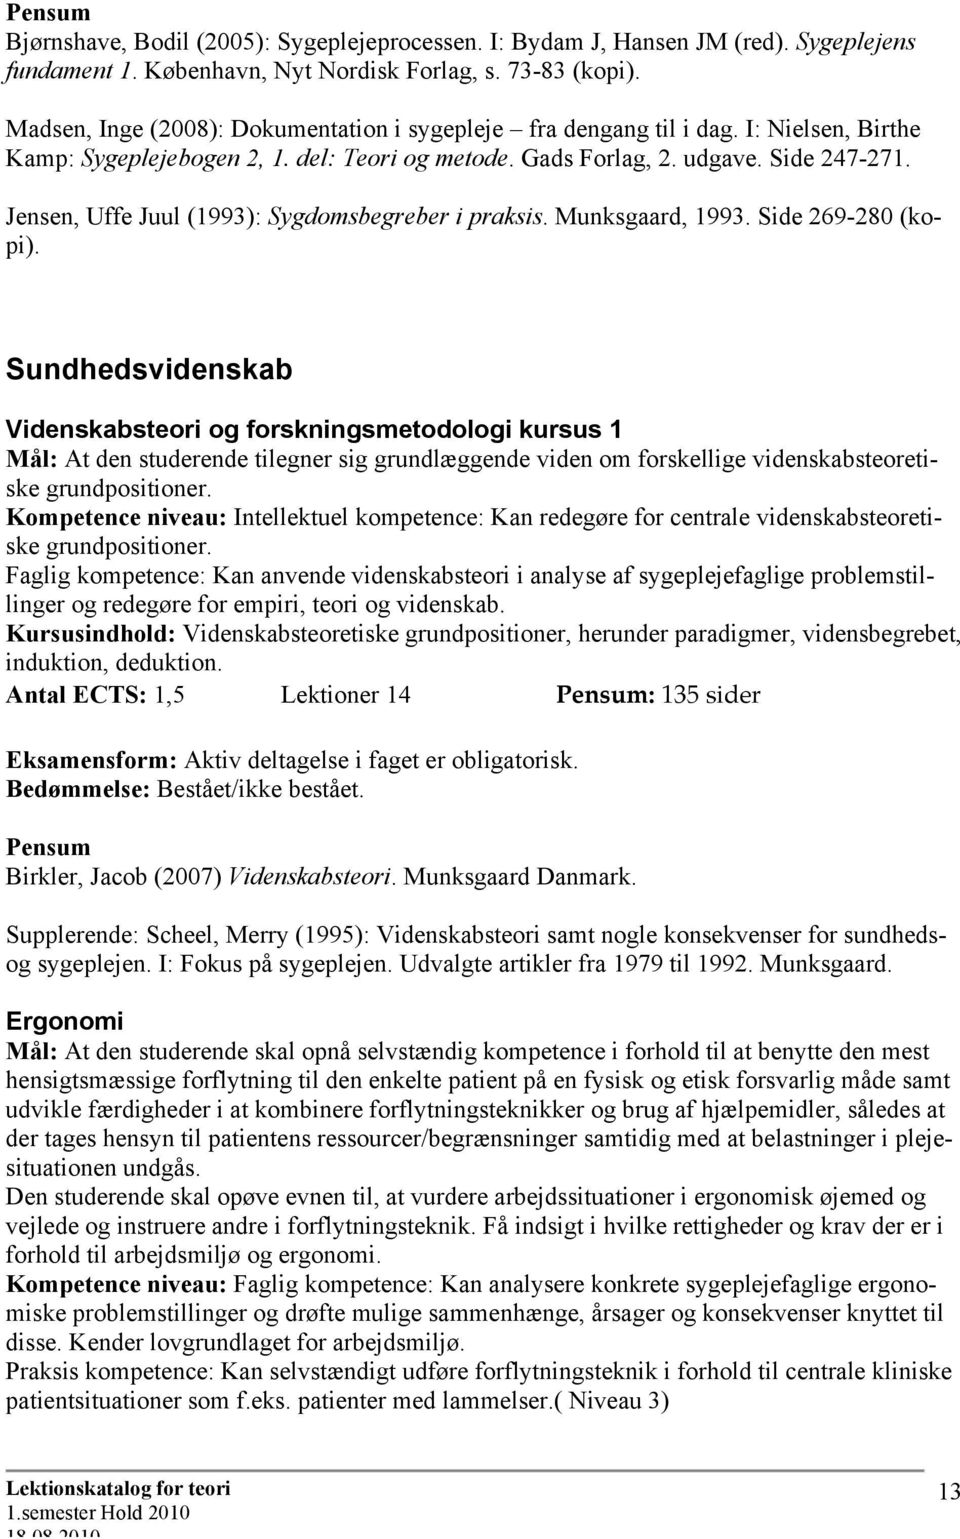 Jensen, Uffe Juul (1993): Sygdomsbegreber i praksis. Munksgaard, 1993. Side 269-280 (kopi).